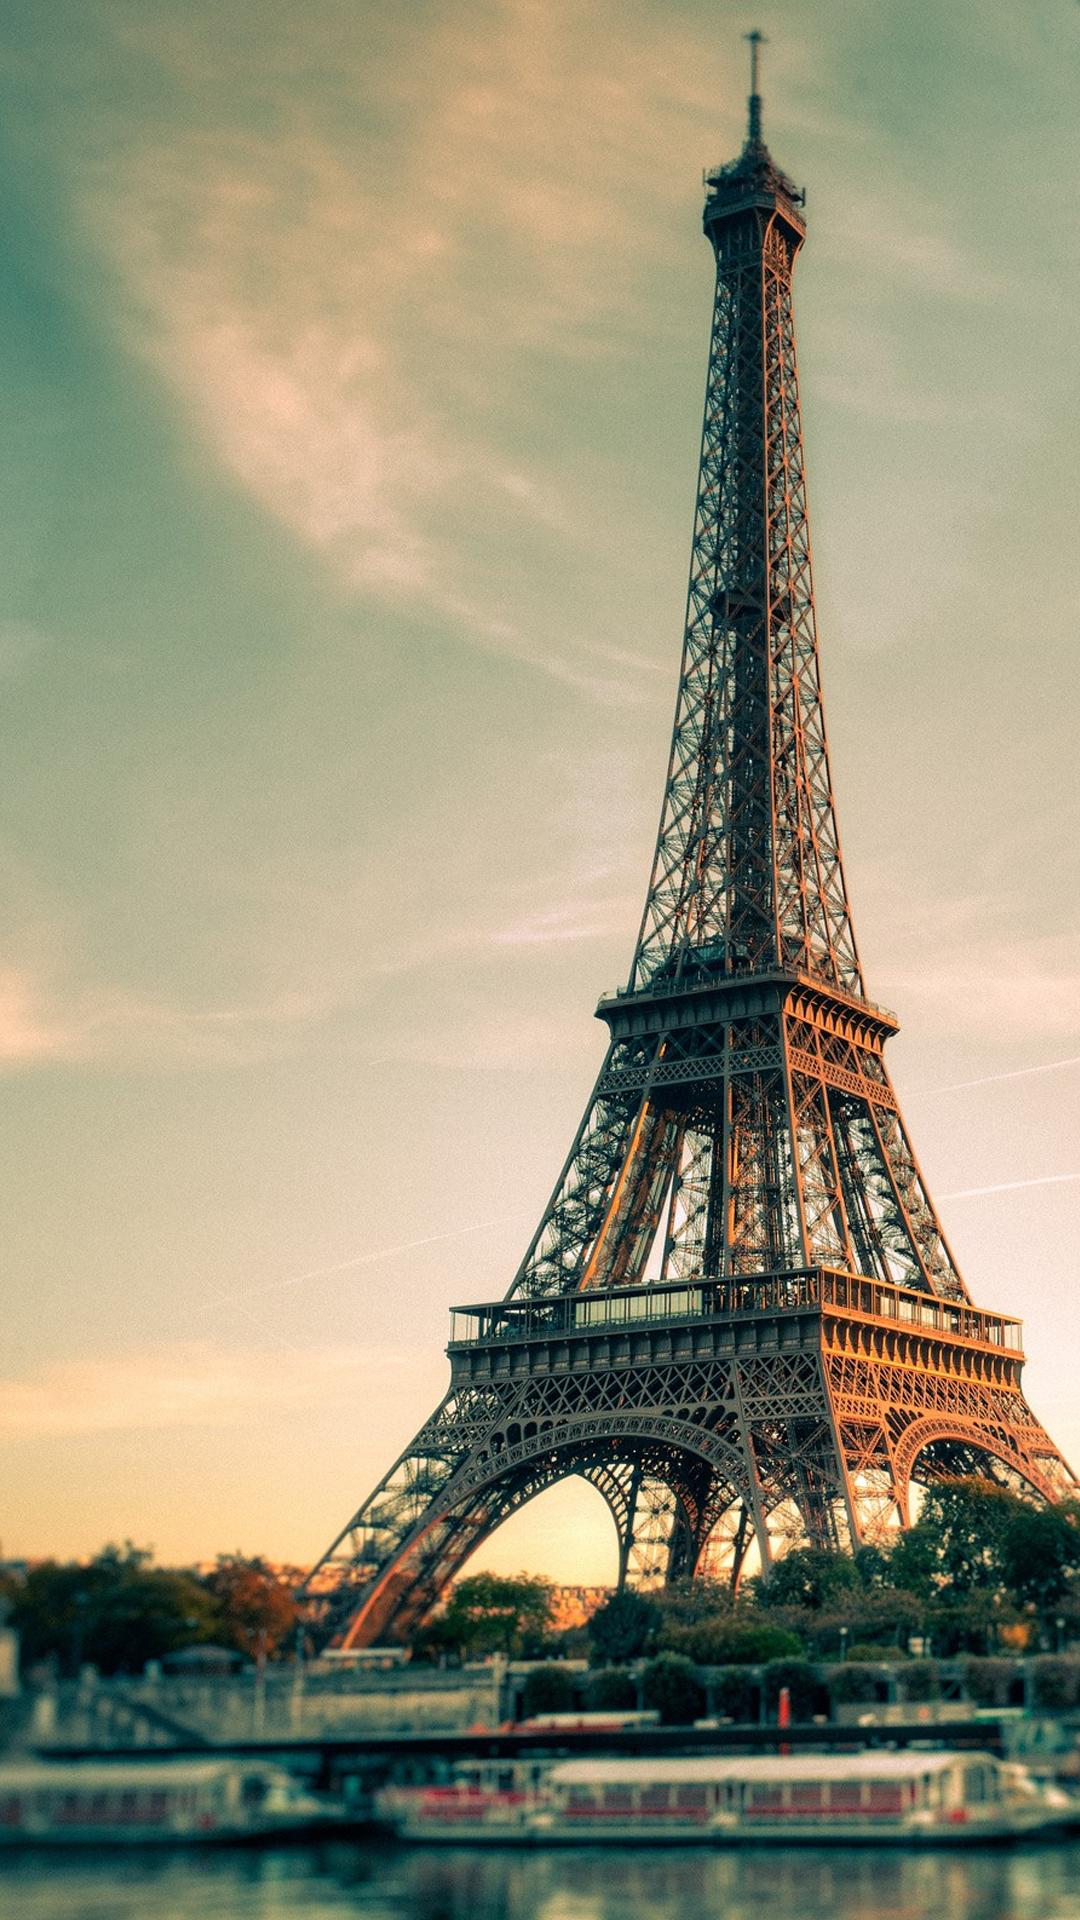 1080 x 1920 · jpeg - Paris Eiffel Tower Smartphone HD Wallpapers  GetPhotos